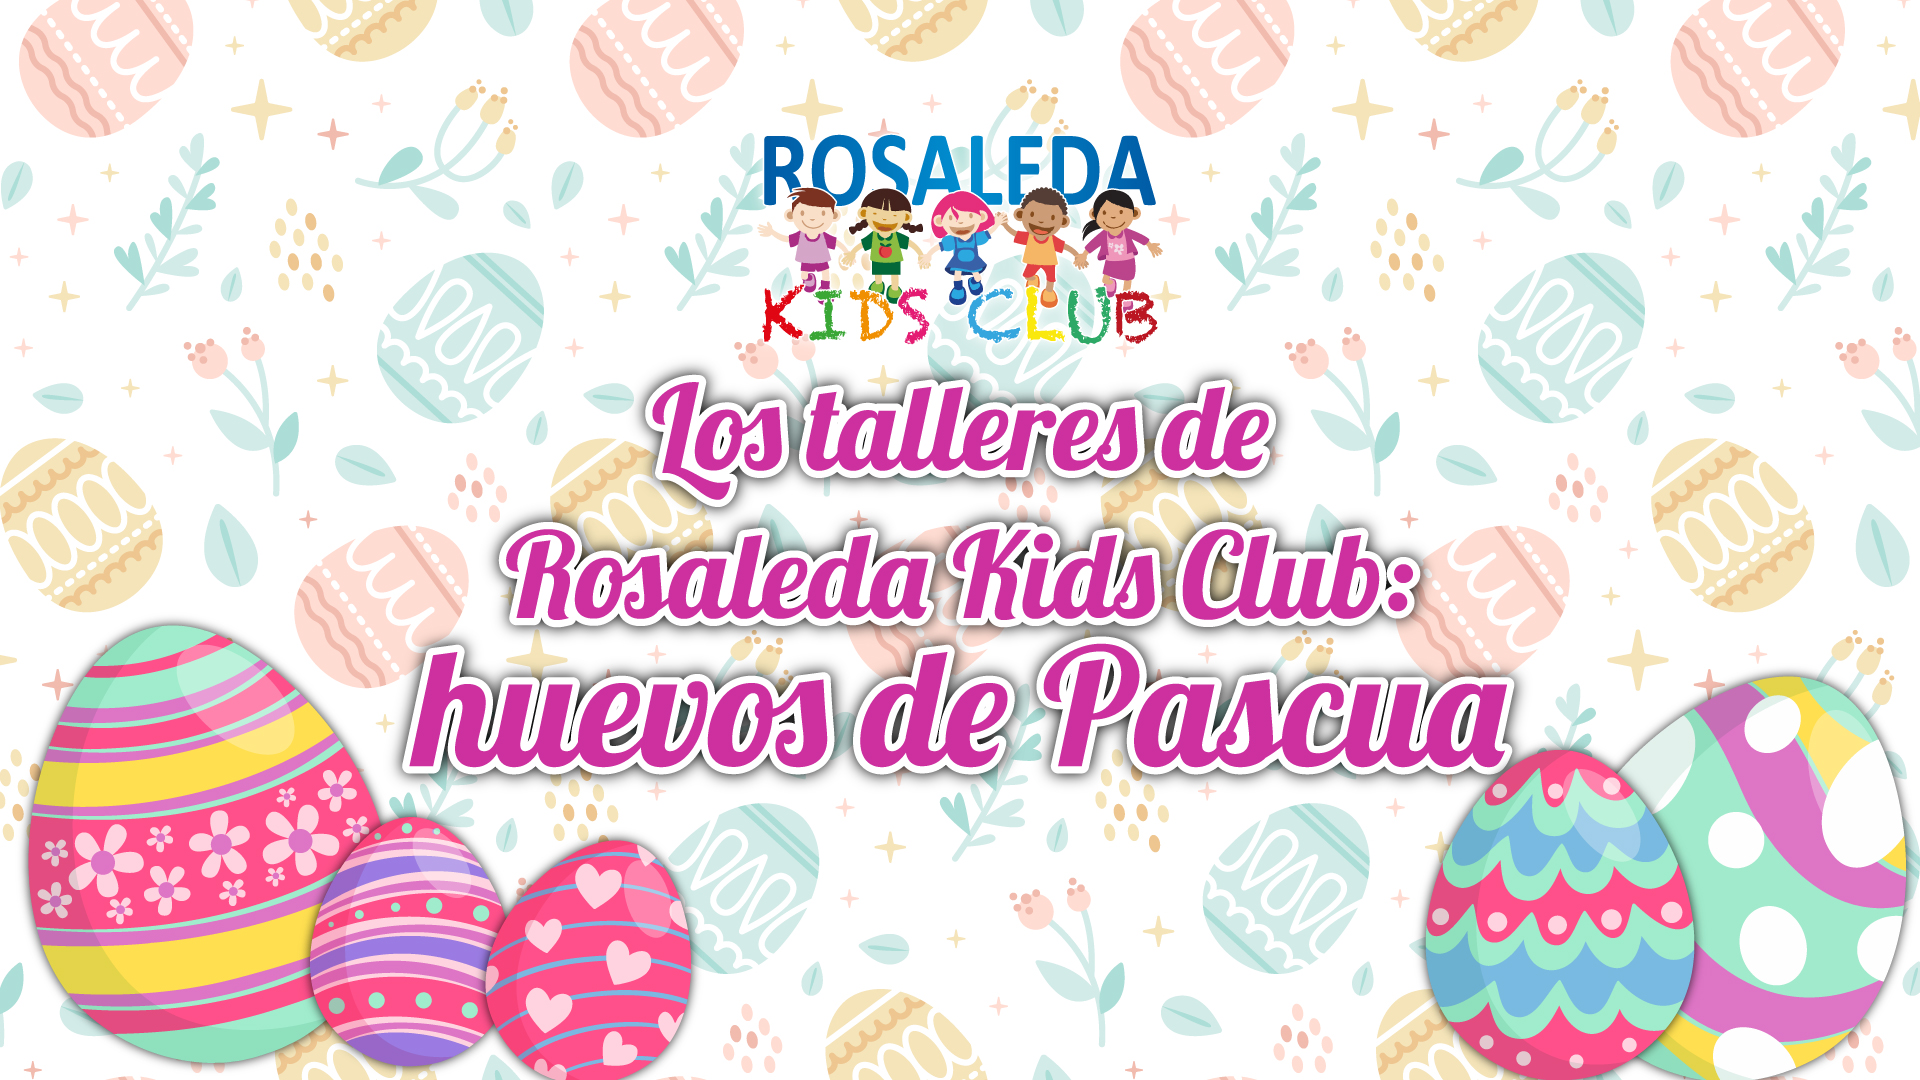 Los talleres de Rosaleda Kids Club: huevos de Pascua